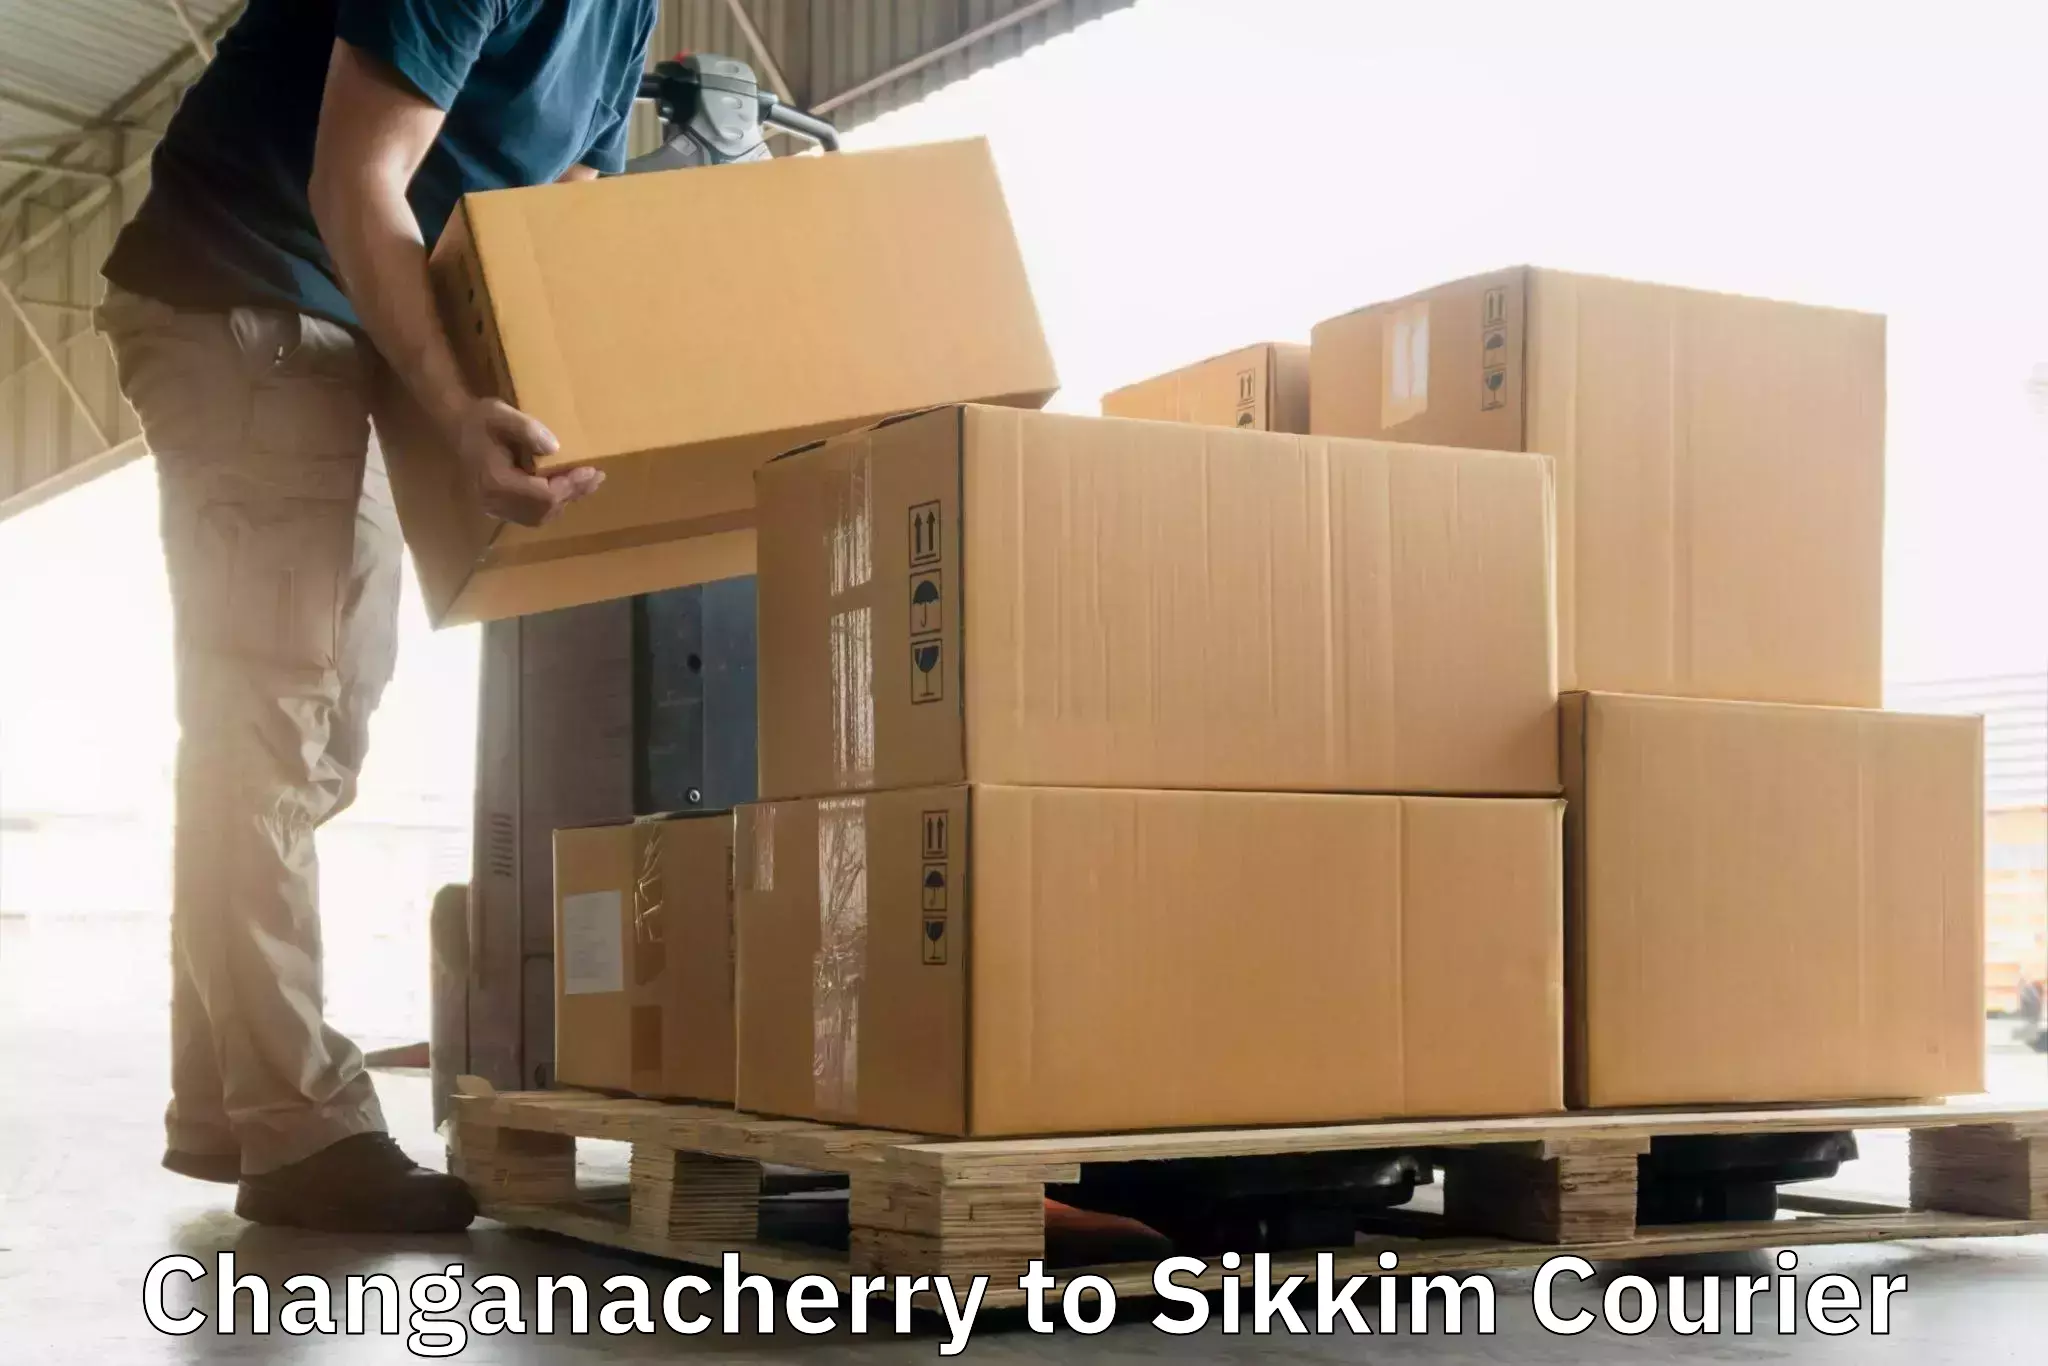 Multi-city courier Changanacherry to North Sikkim